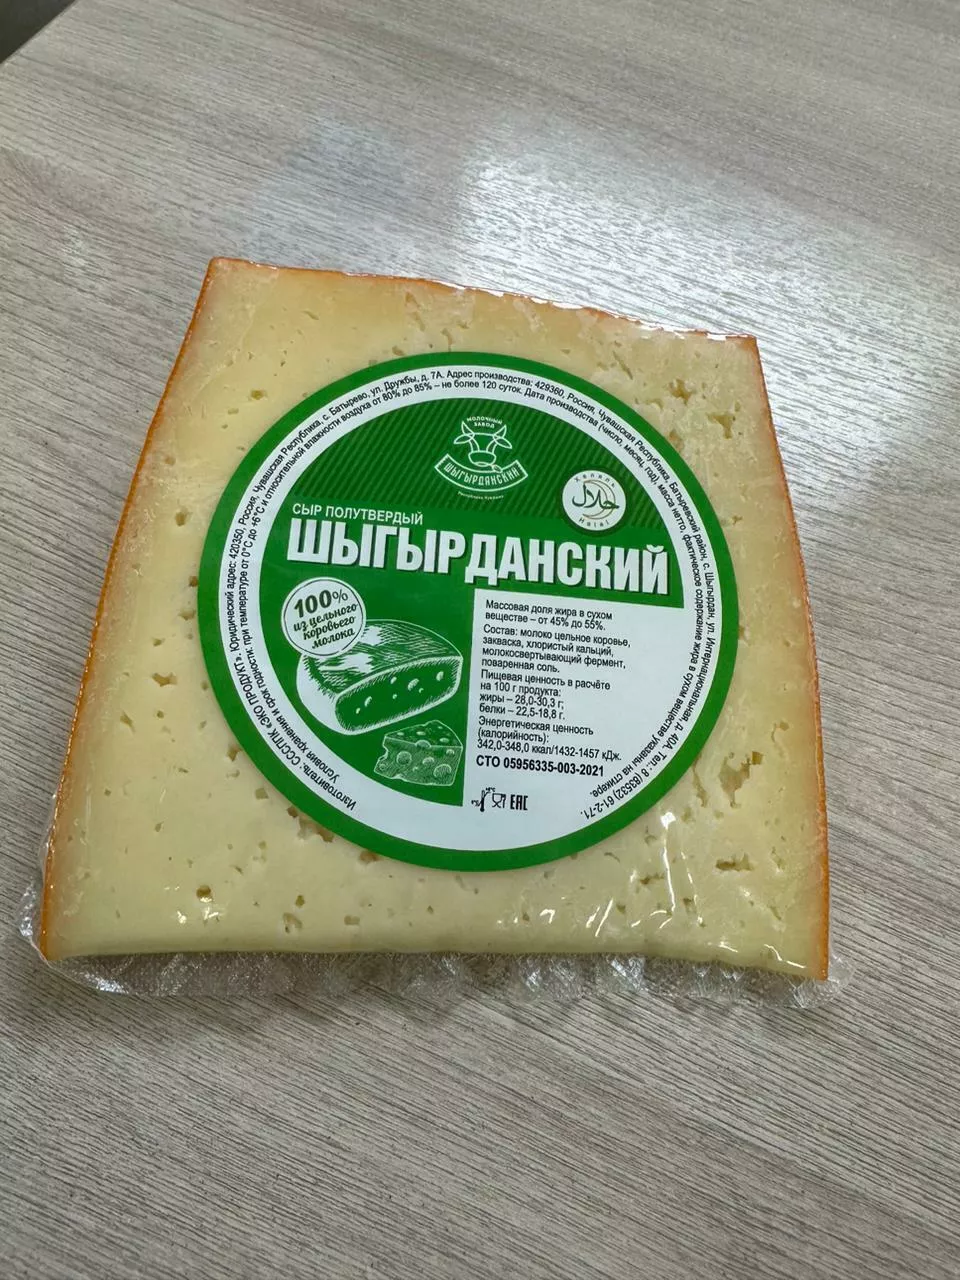 натуральный сыр, масло высокого качества в Чебоксарах и Чувашии 3